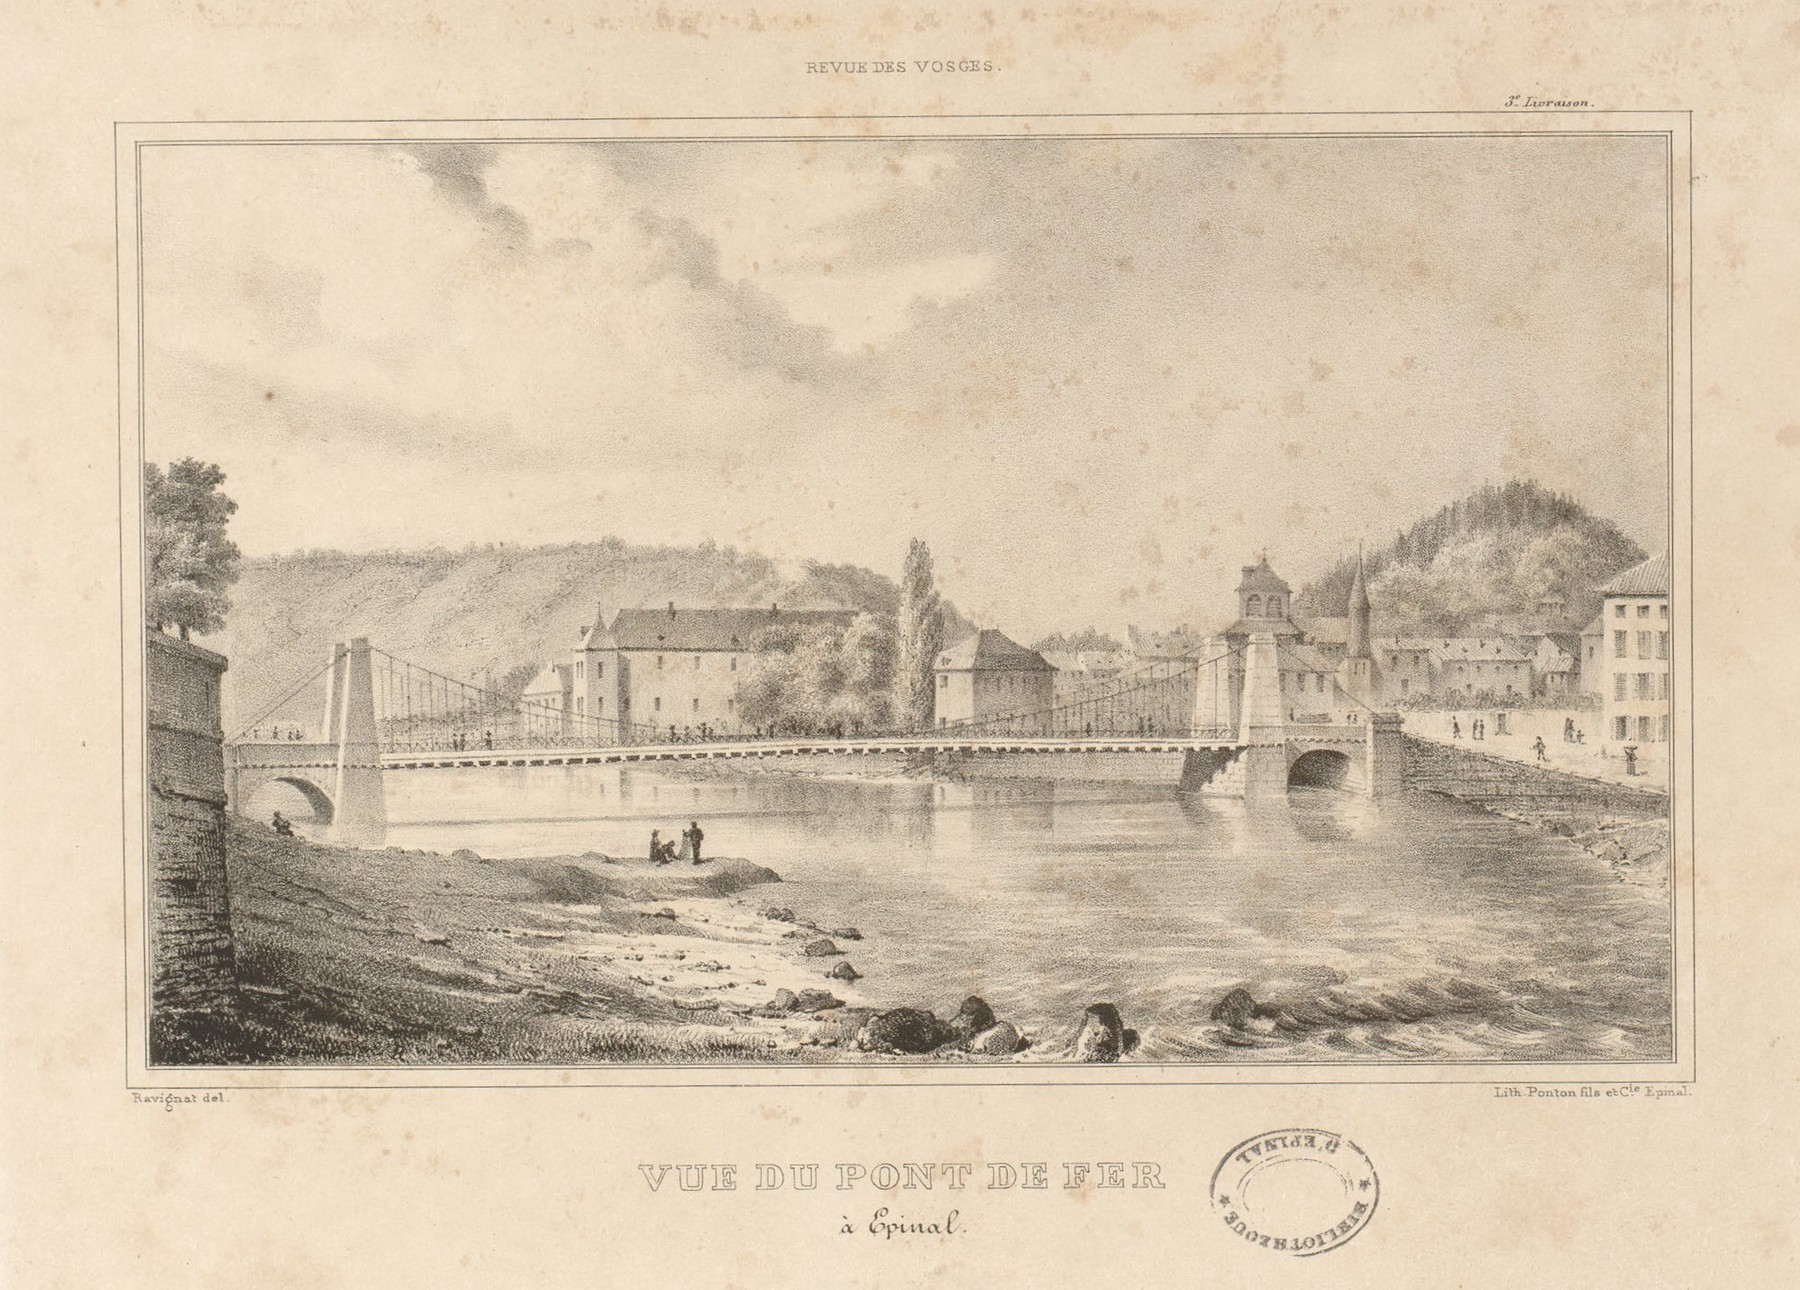 Contenu du Épinal : vue du pont de fer